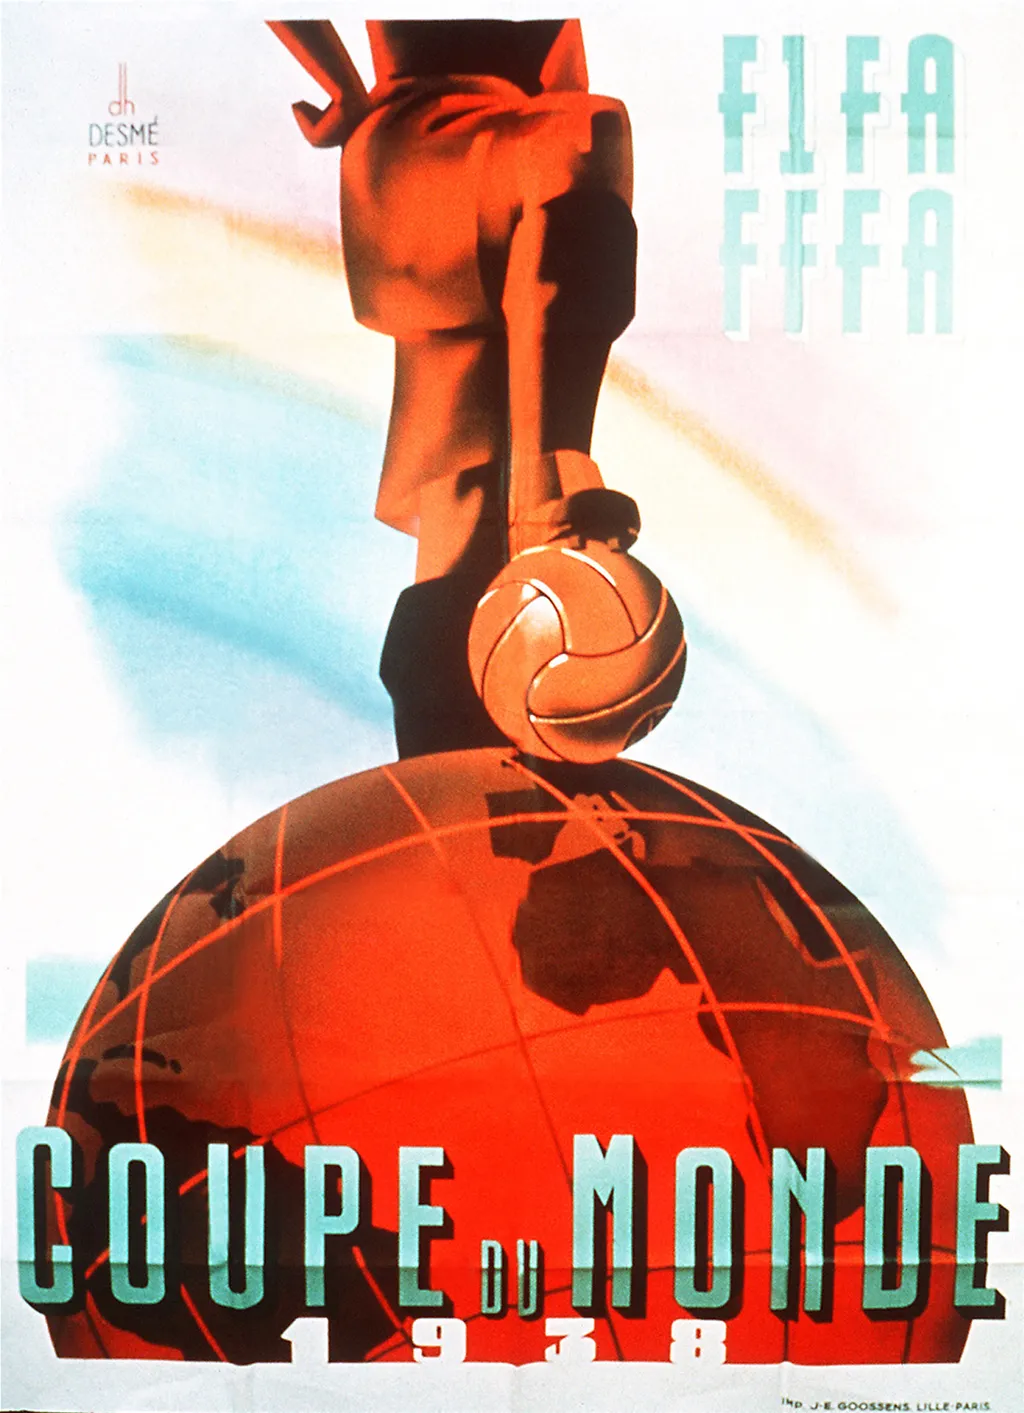 Labdarúgó-világbajnokság, labdarúgóvébé, futballvébé, labdarúgás, hivatalos plakát, poszter, 1938, Franciaország 